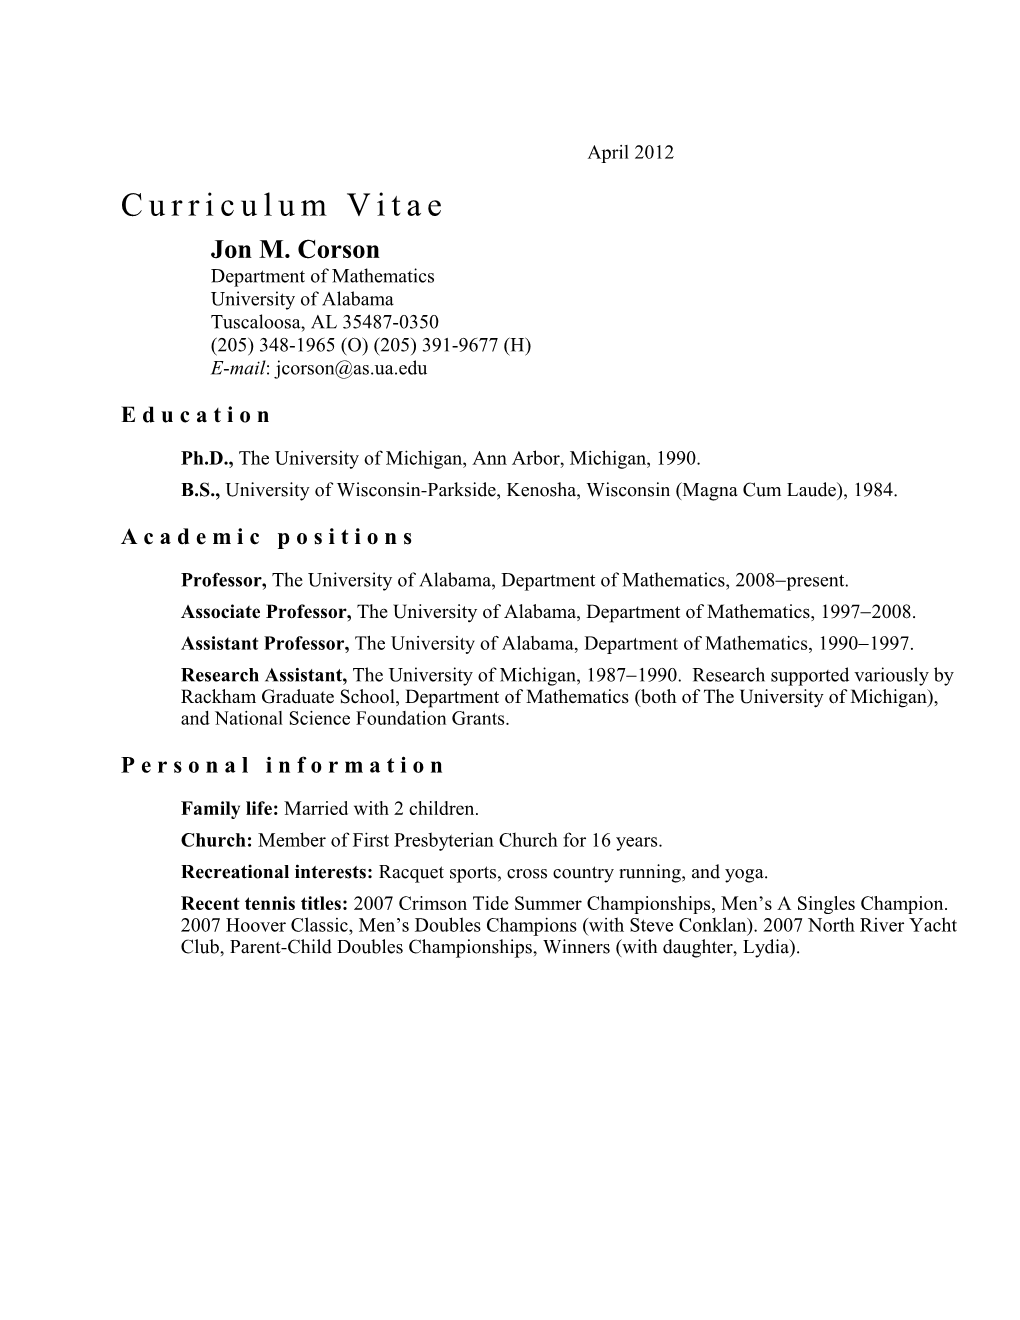 Curriculum Vitae s199